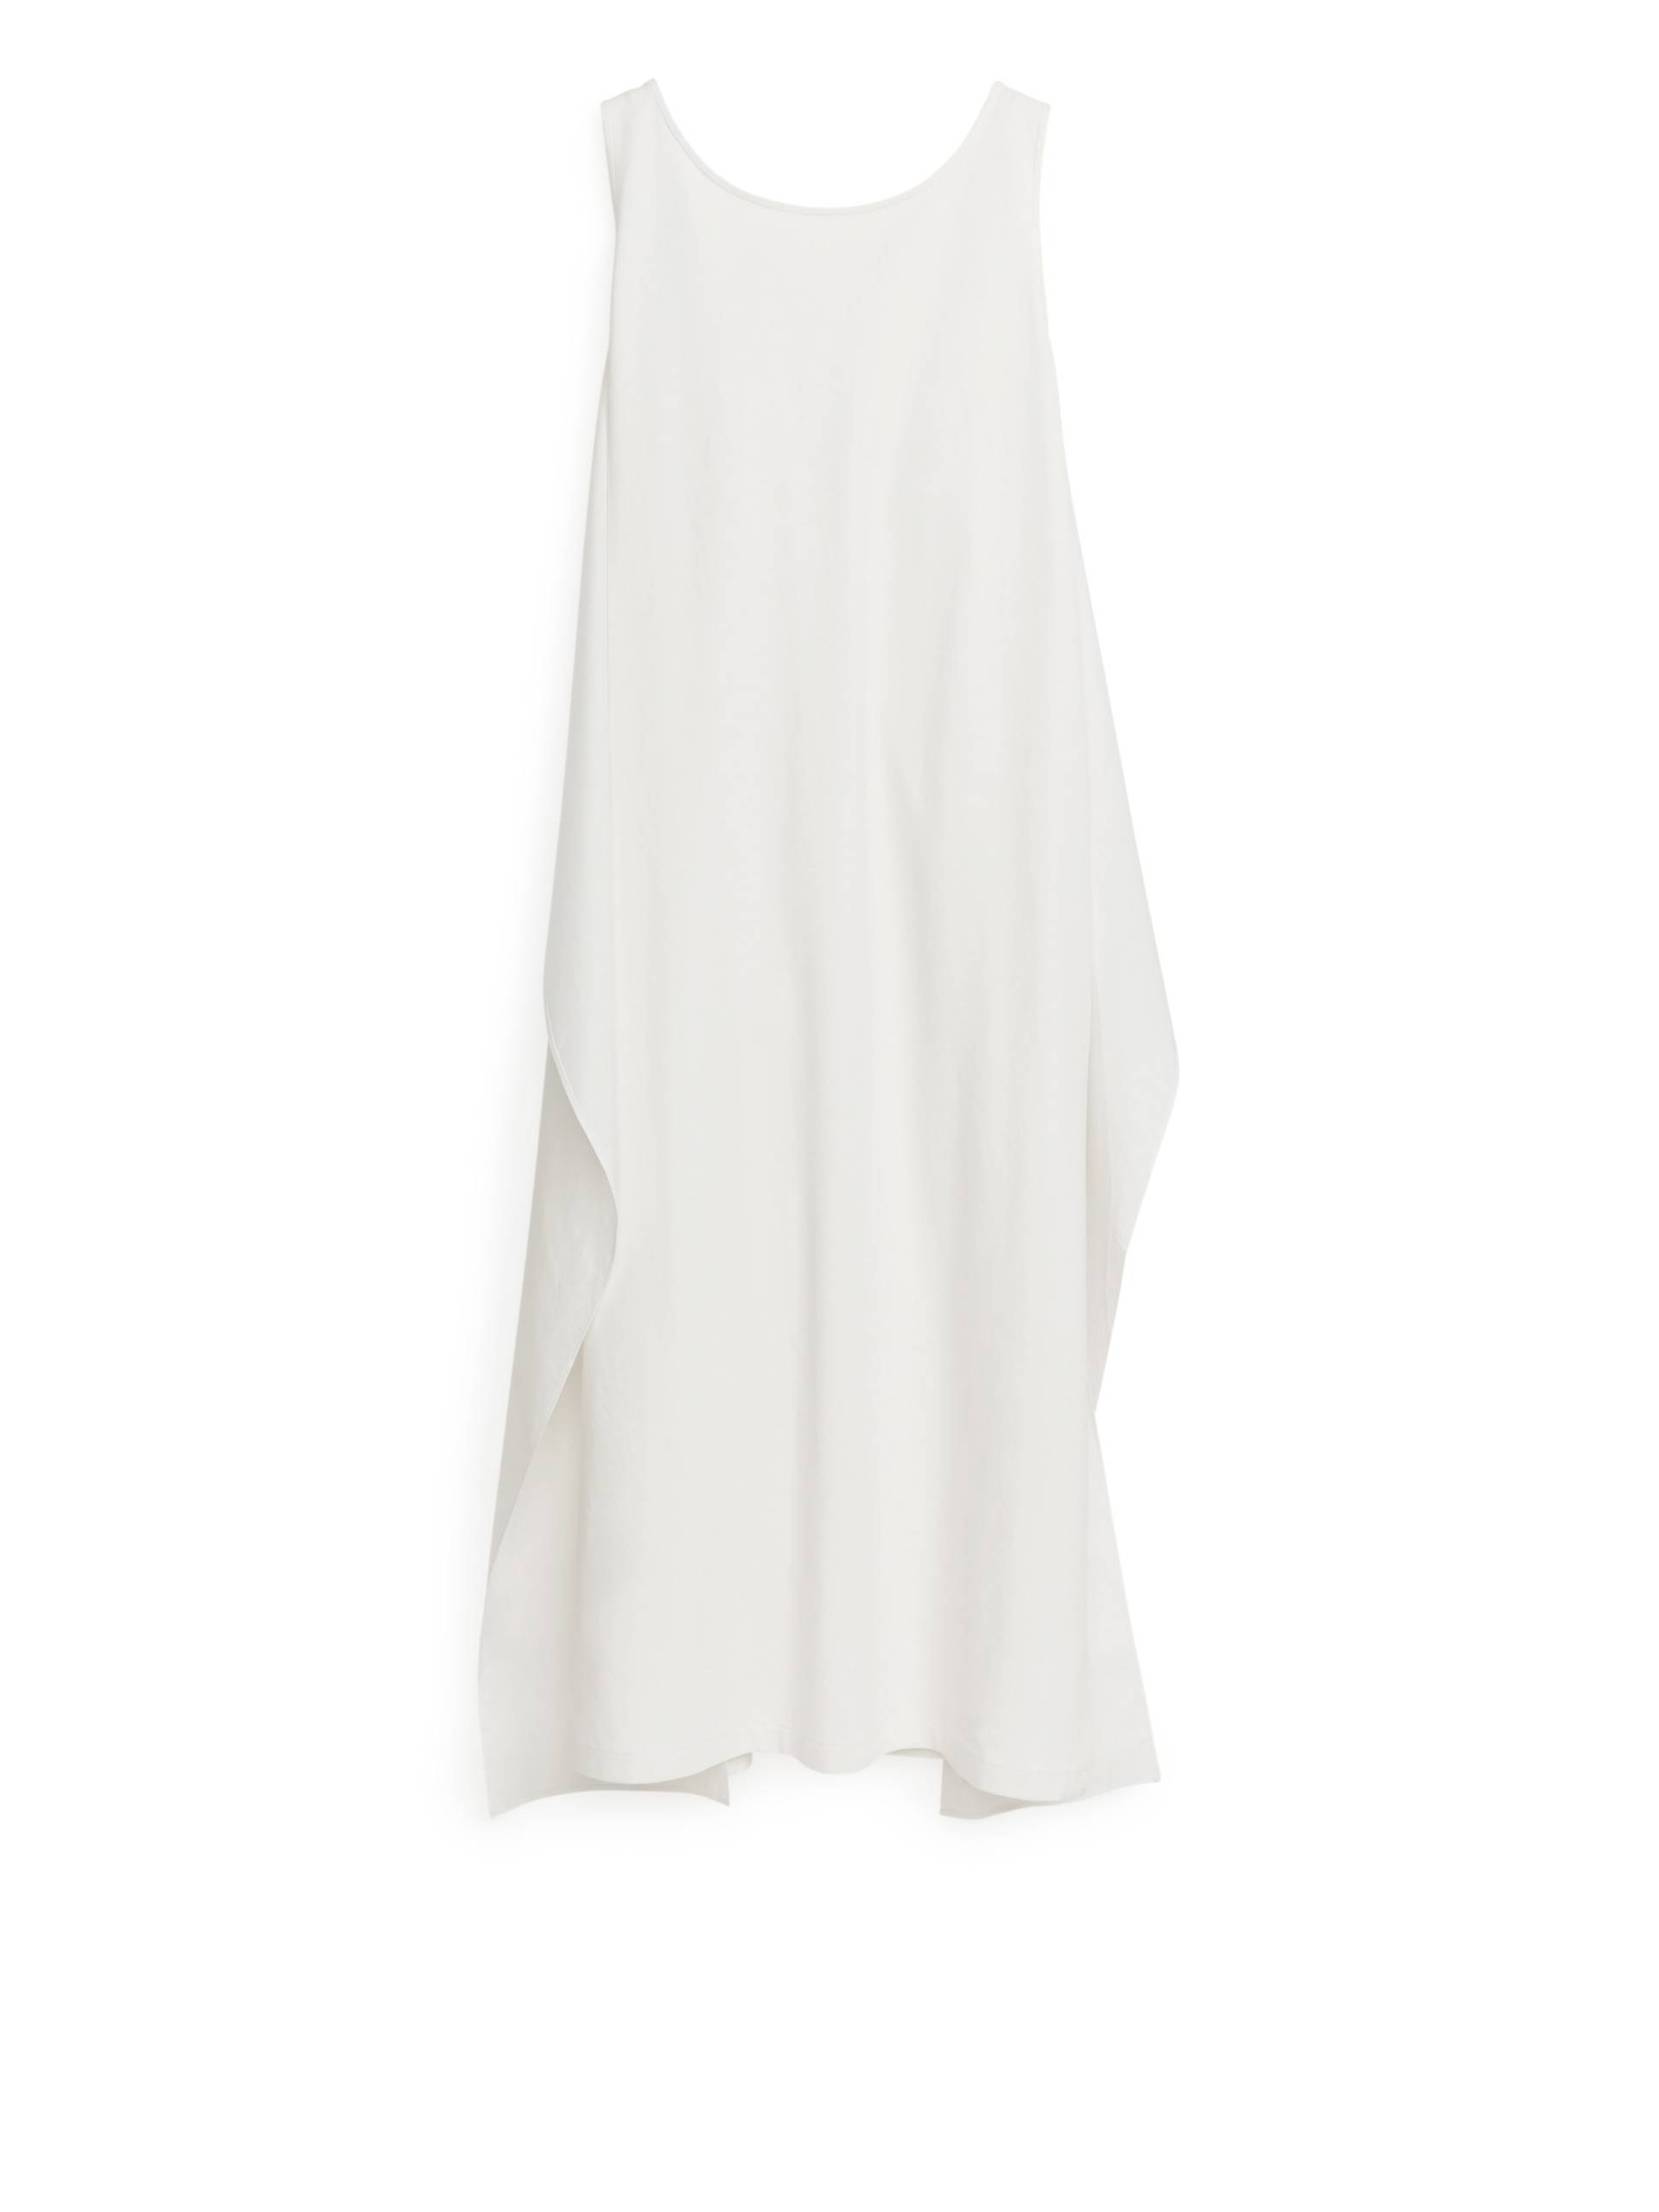 Arket Jerseykleid mit Popeline-Details Weiß, Alltagskleider in Größe M. Farbe: White von Arket